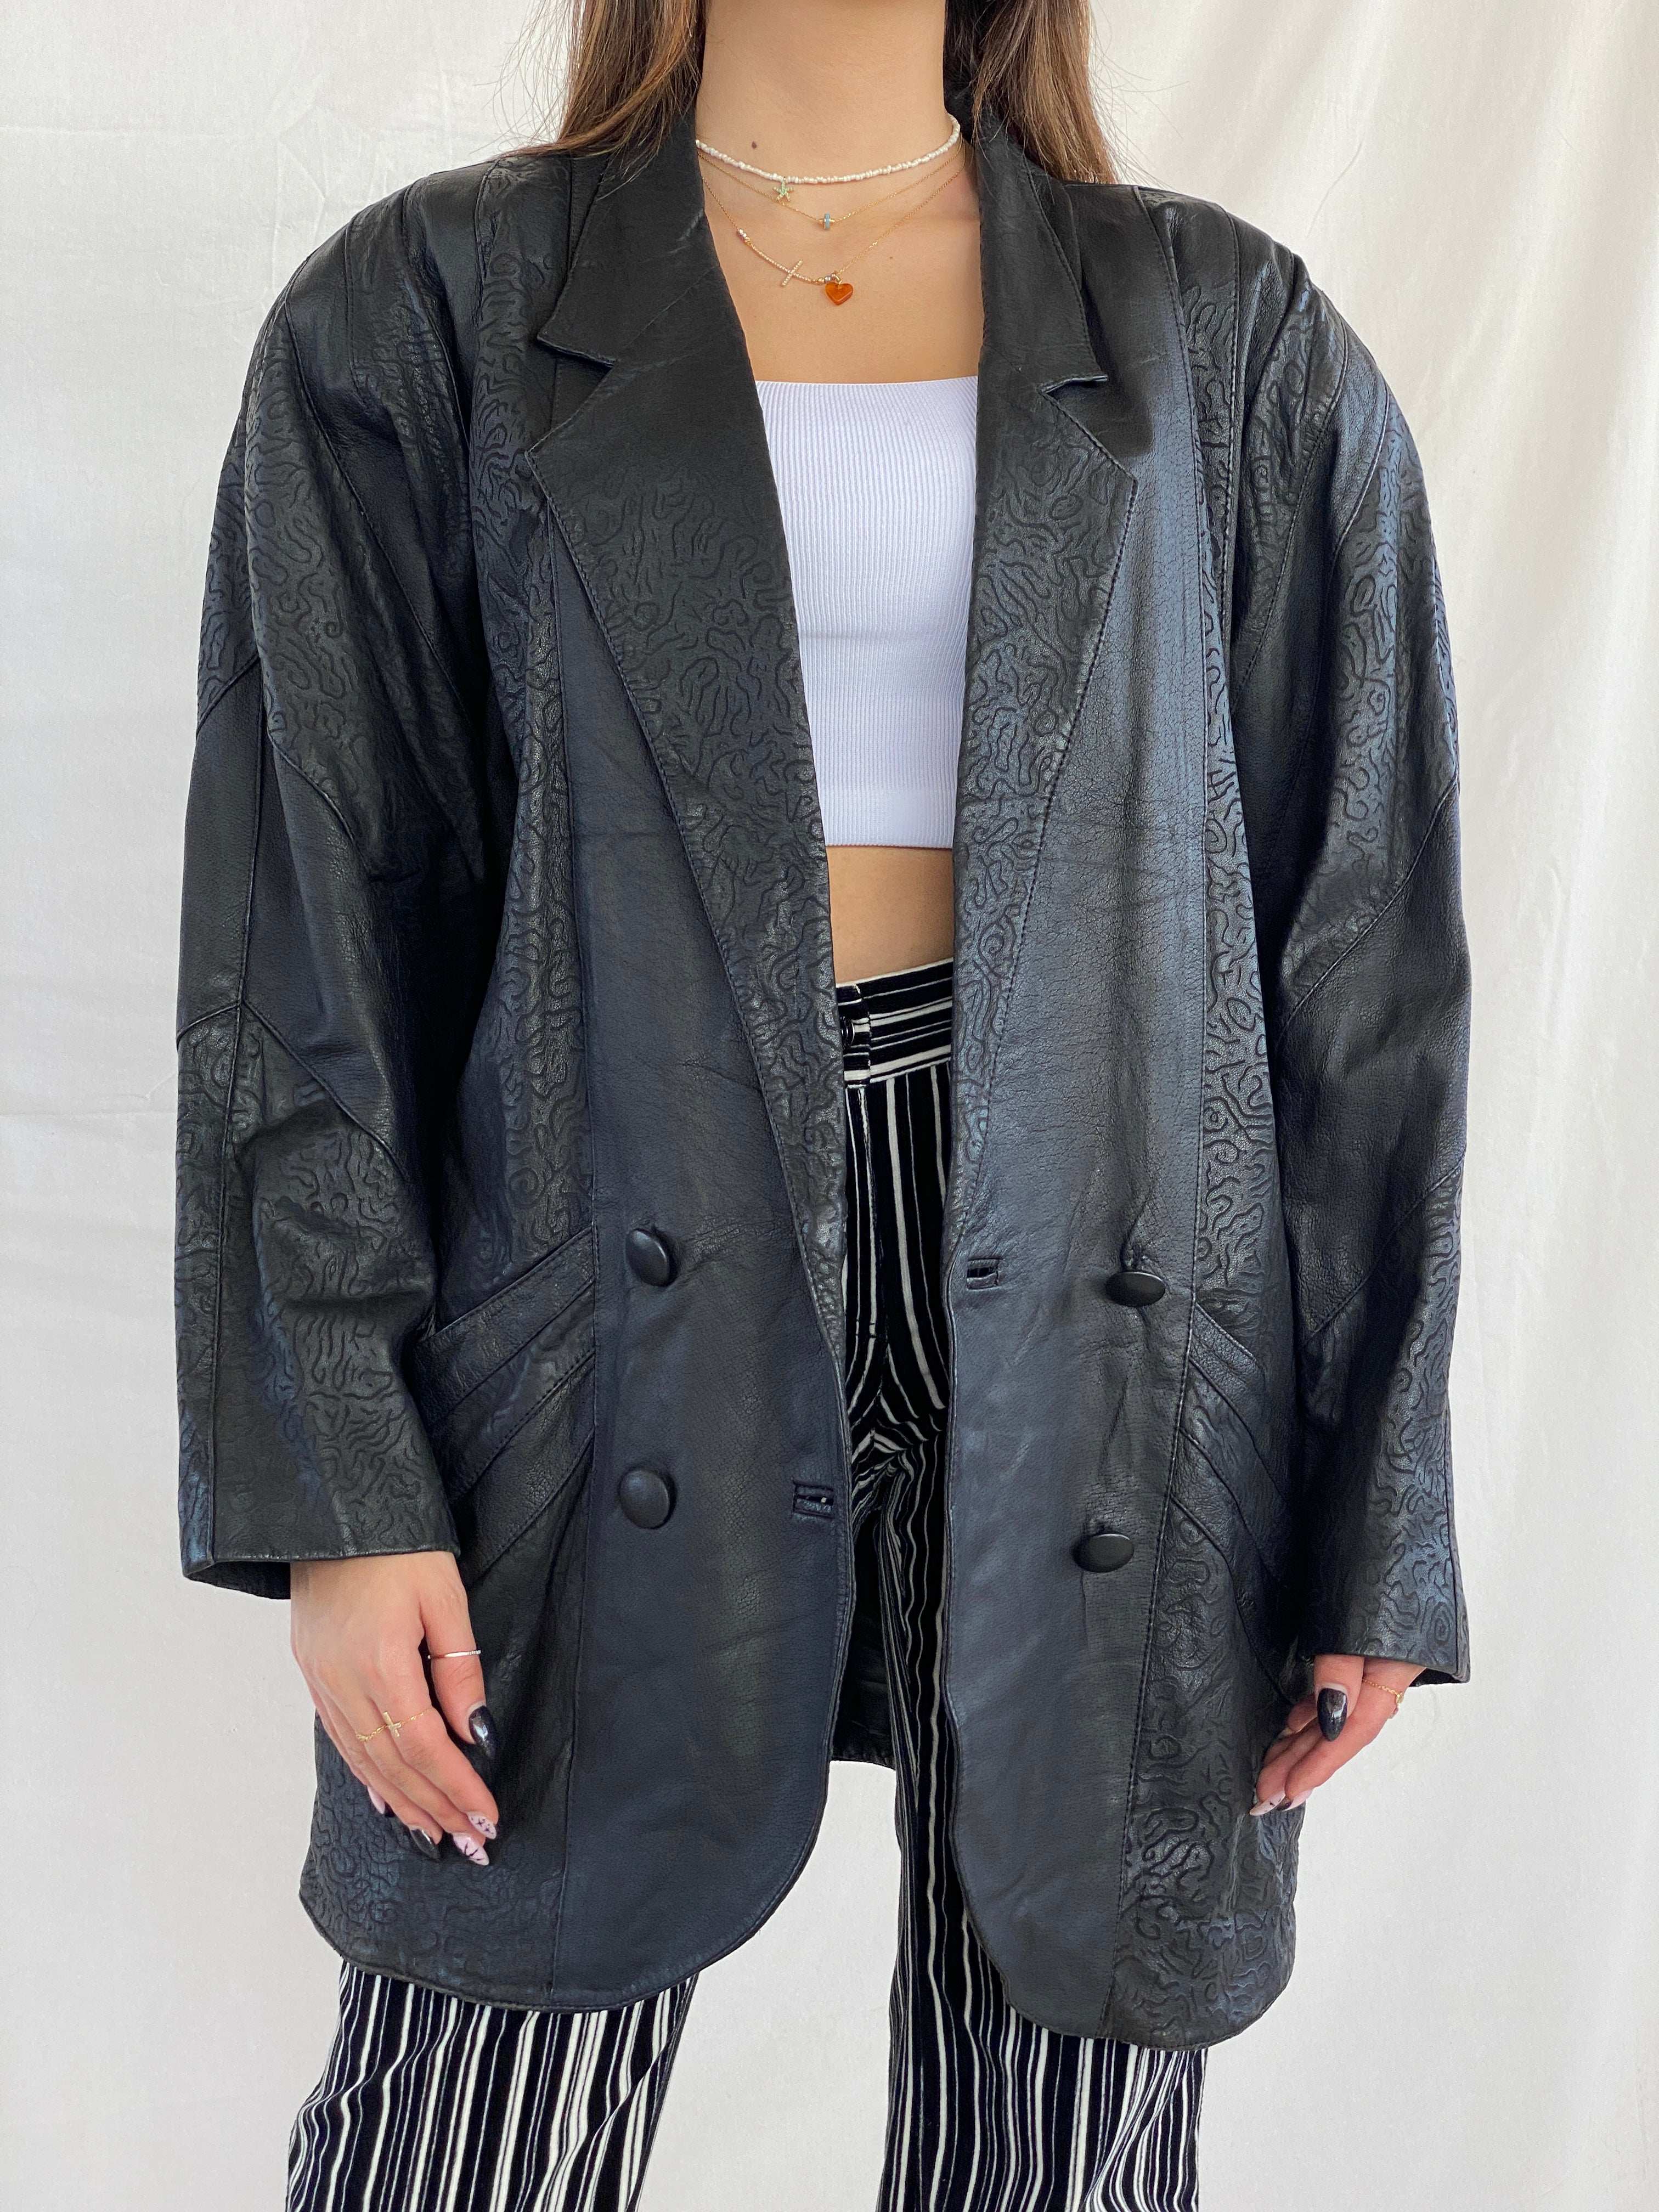 JDEFEG Dressy Jackets for Women Coat Retro Outwear Zipper Jacket